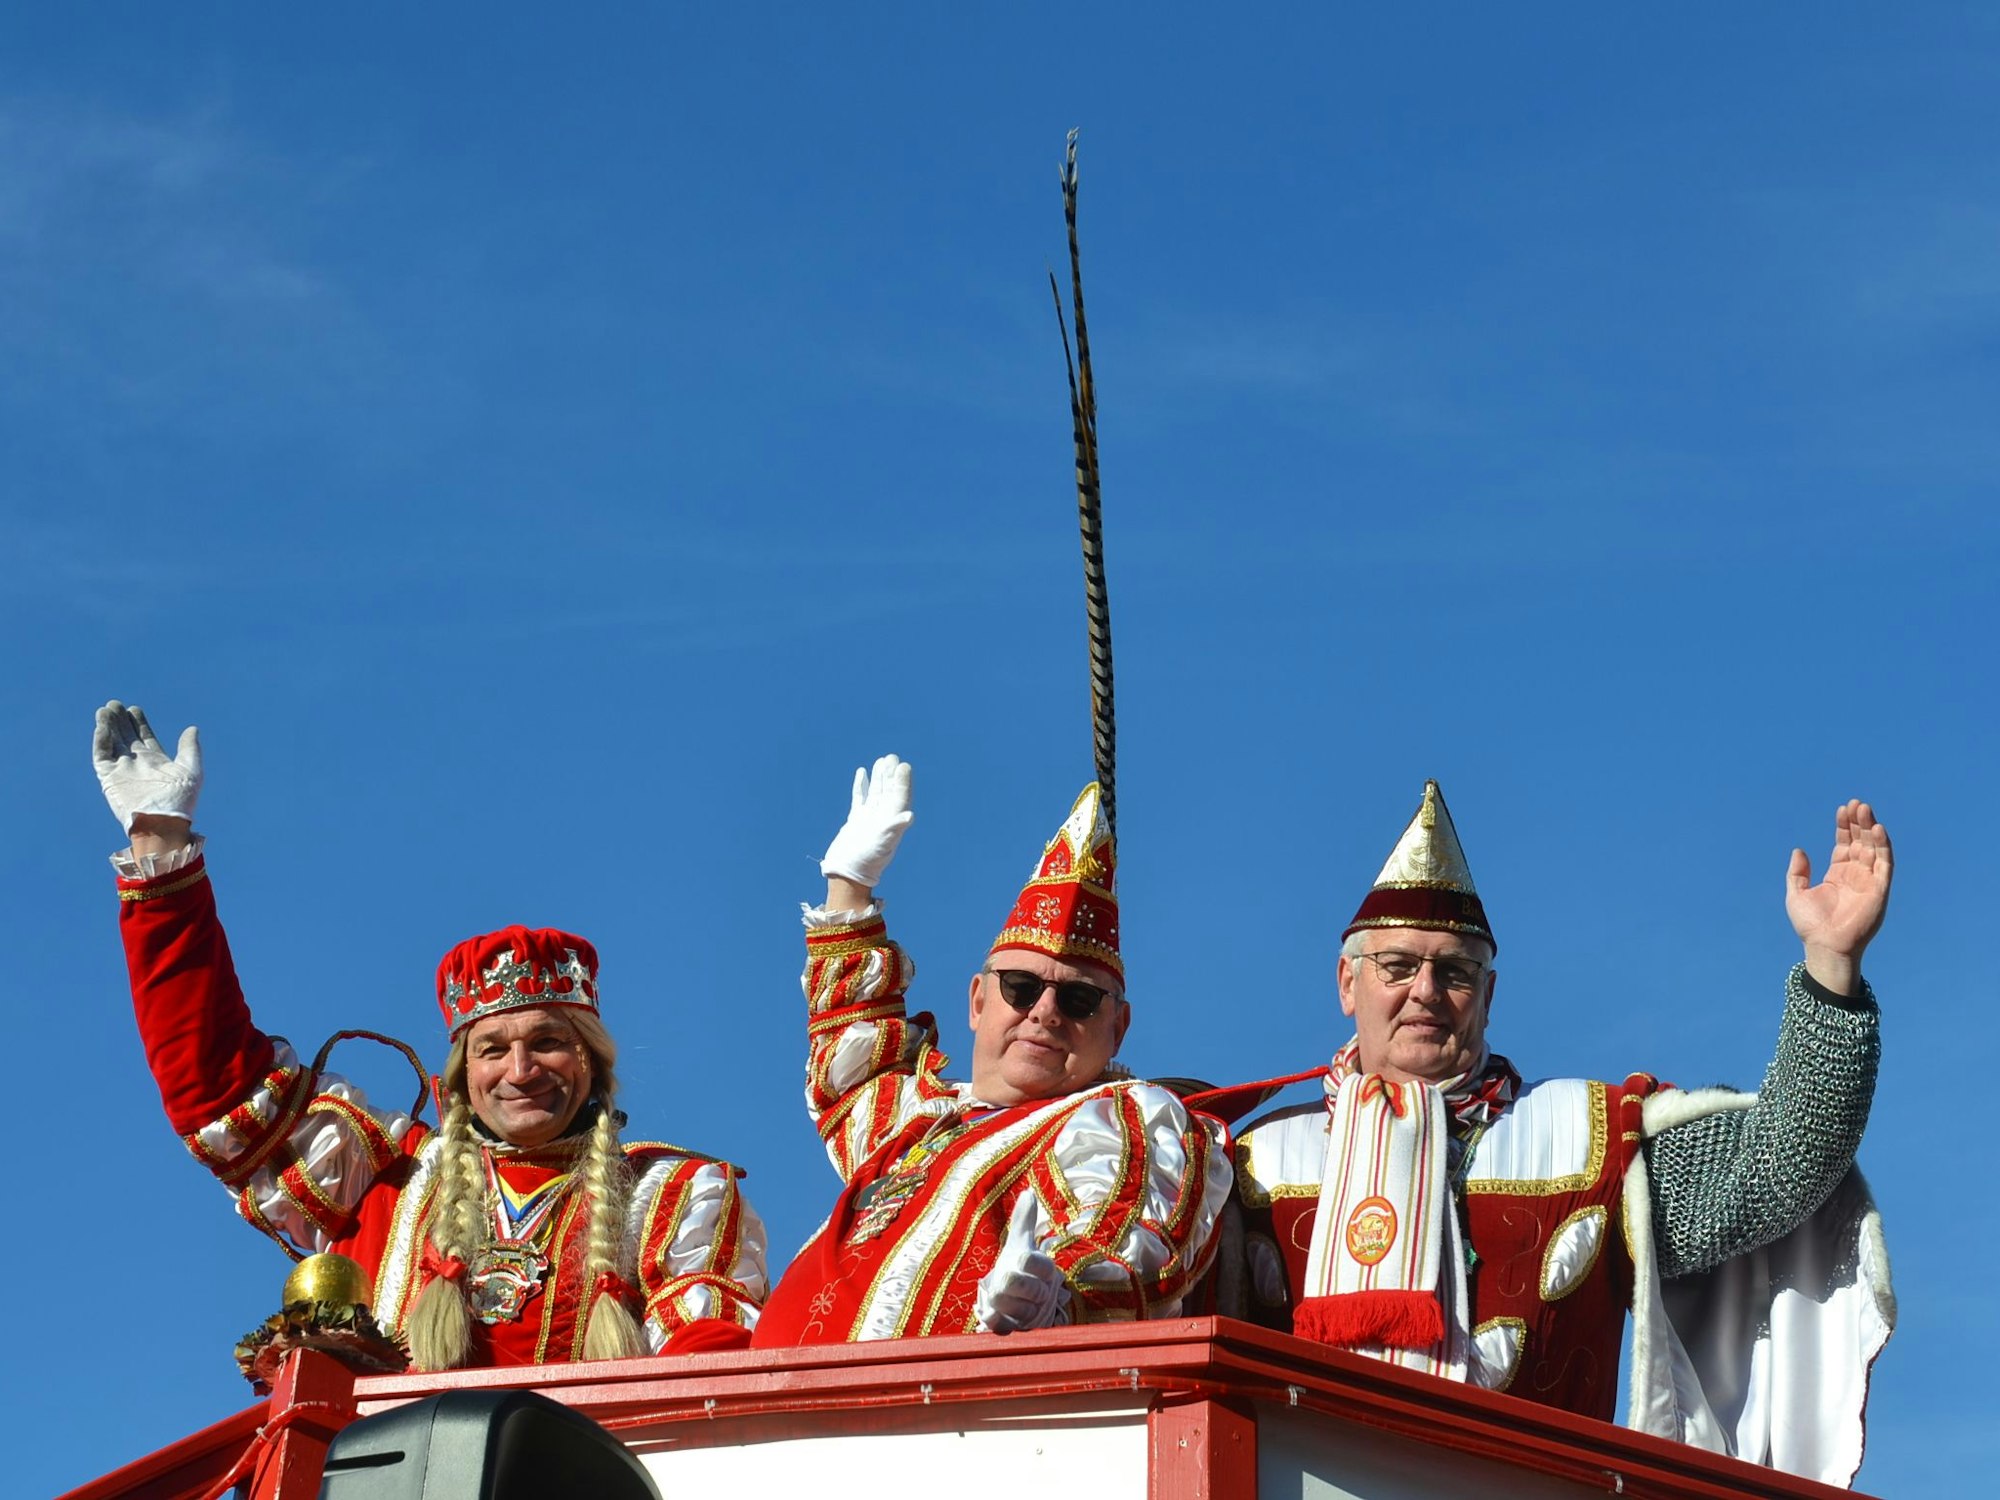 Royale Unterstützung erhielt der Harzheimer Karnevalszug durch das Vussemer Dreigestirn Jungfrau Dunja, Prinz Frank I. und Bauer Peter.